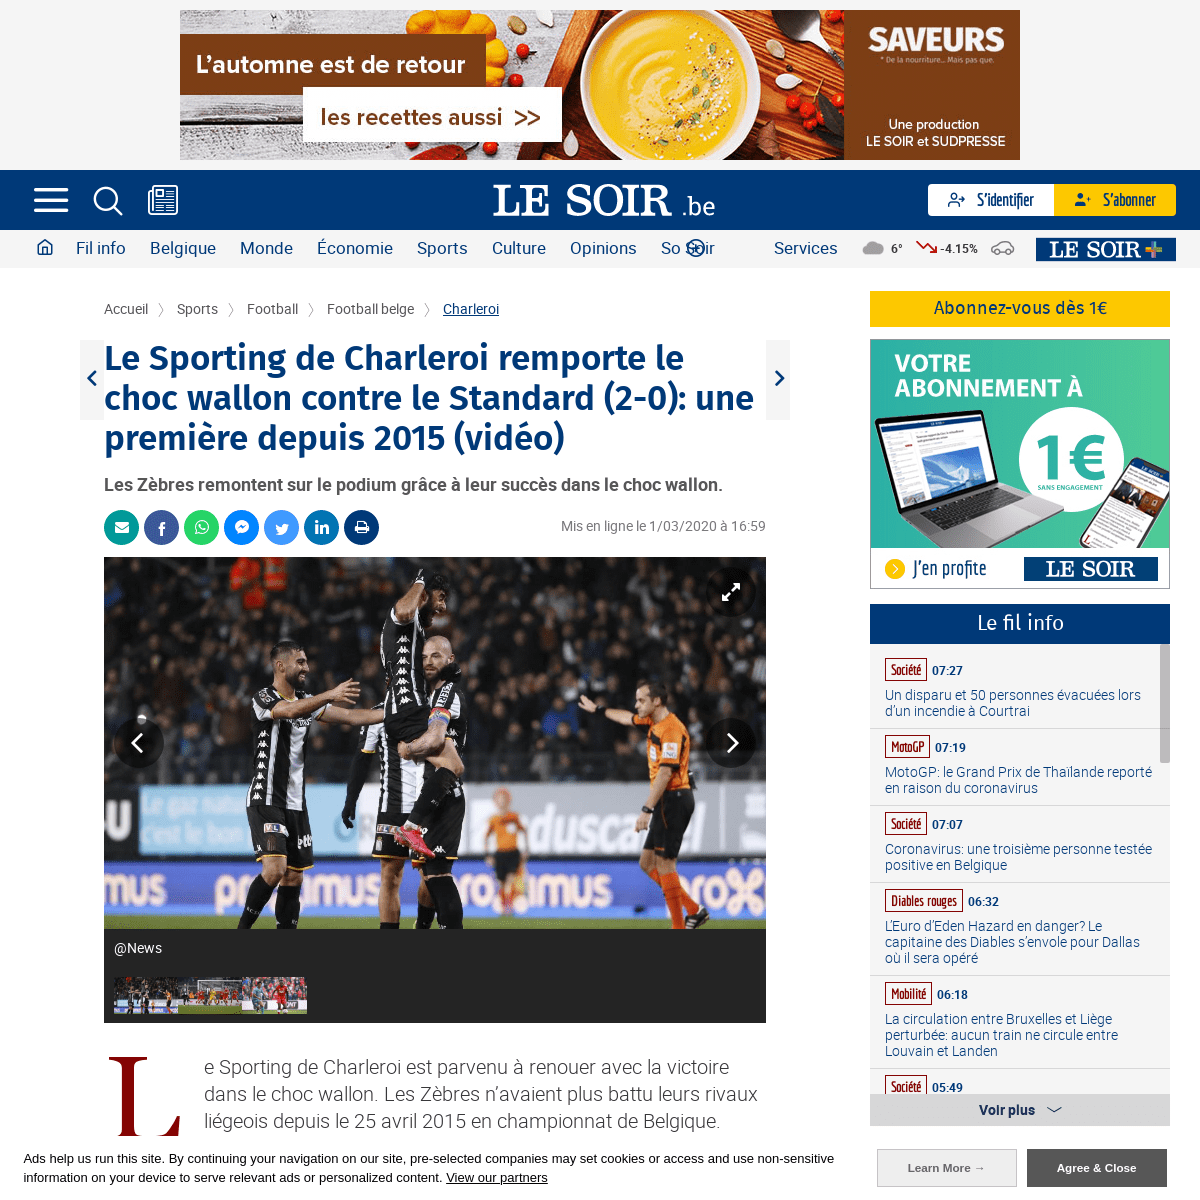 Le Sporting de Charleroi remporte le choc wallon contre le Standard (2-0)- une premiÃ¨re depuis 2015 (vidÃ©o) - Le Soir